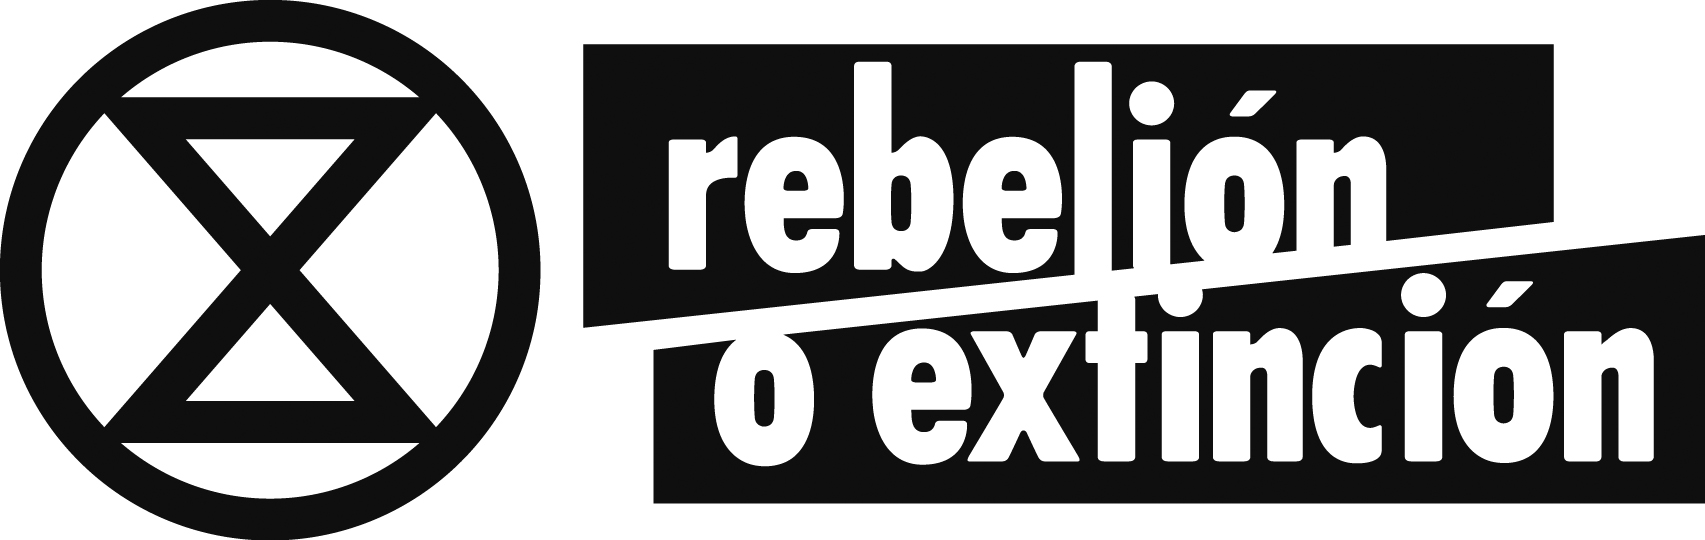 XR Rebelion o Extinsión